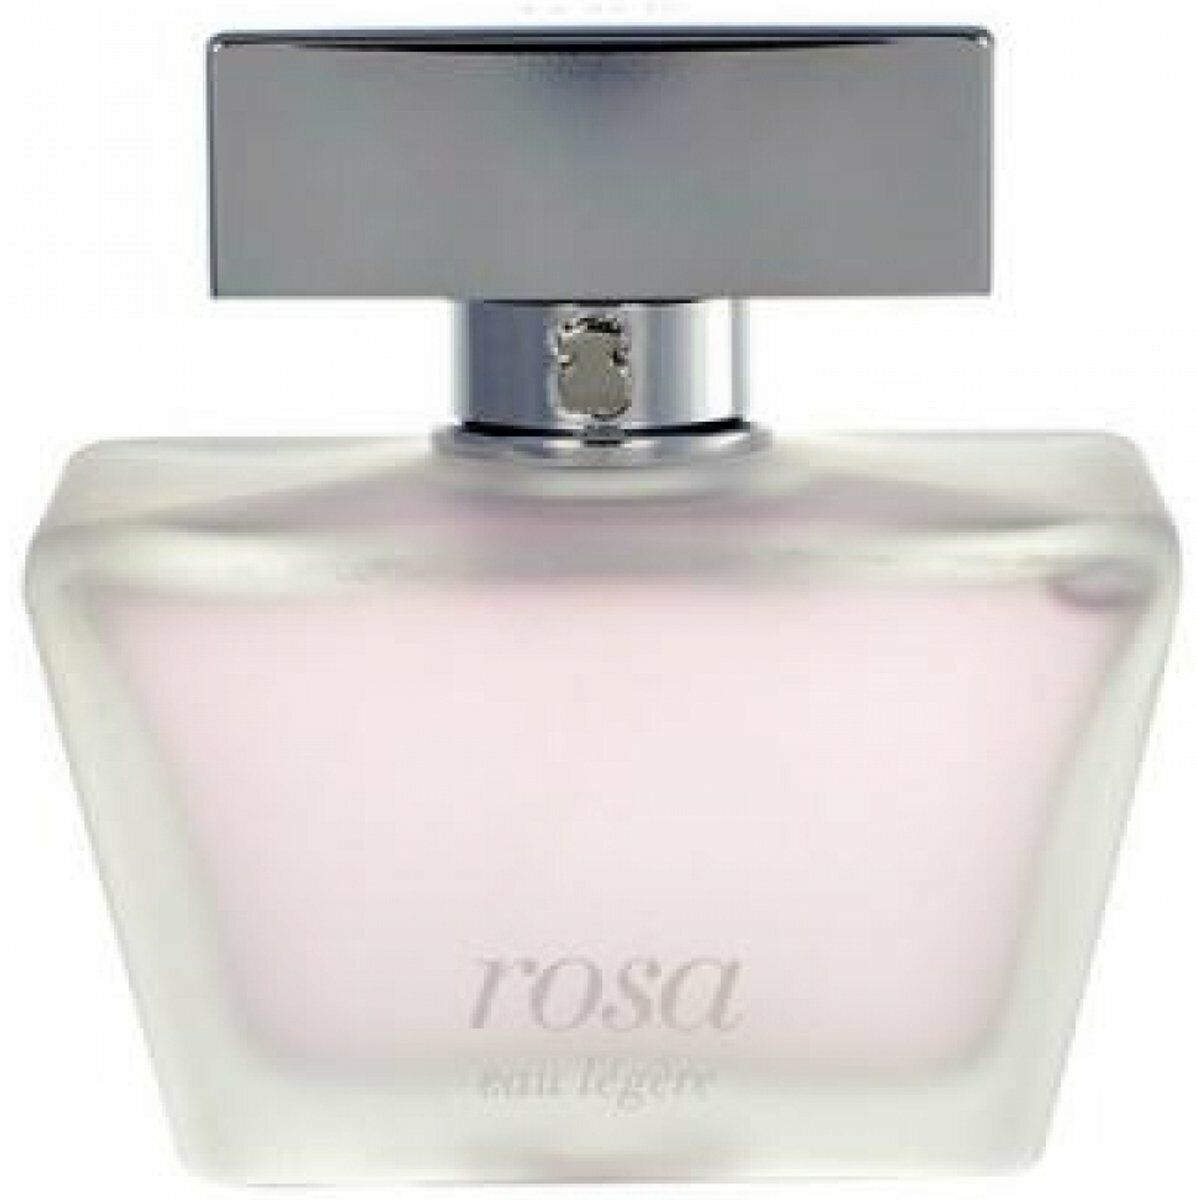 Tous Rosa eau legere by Tous for women EDT 3.0 / 3 oz New Tester